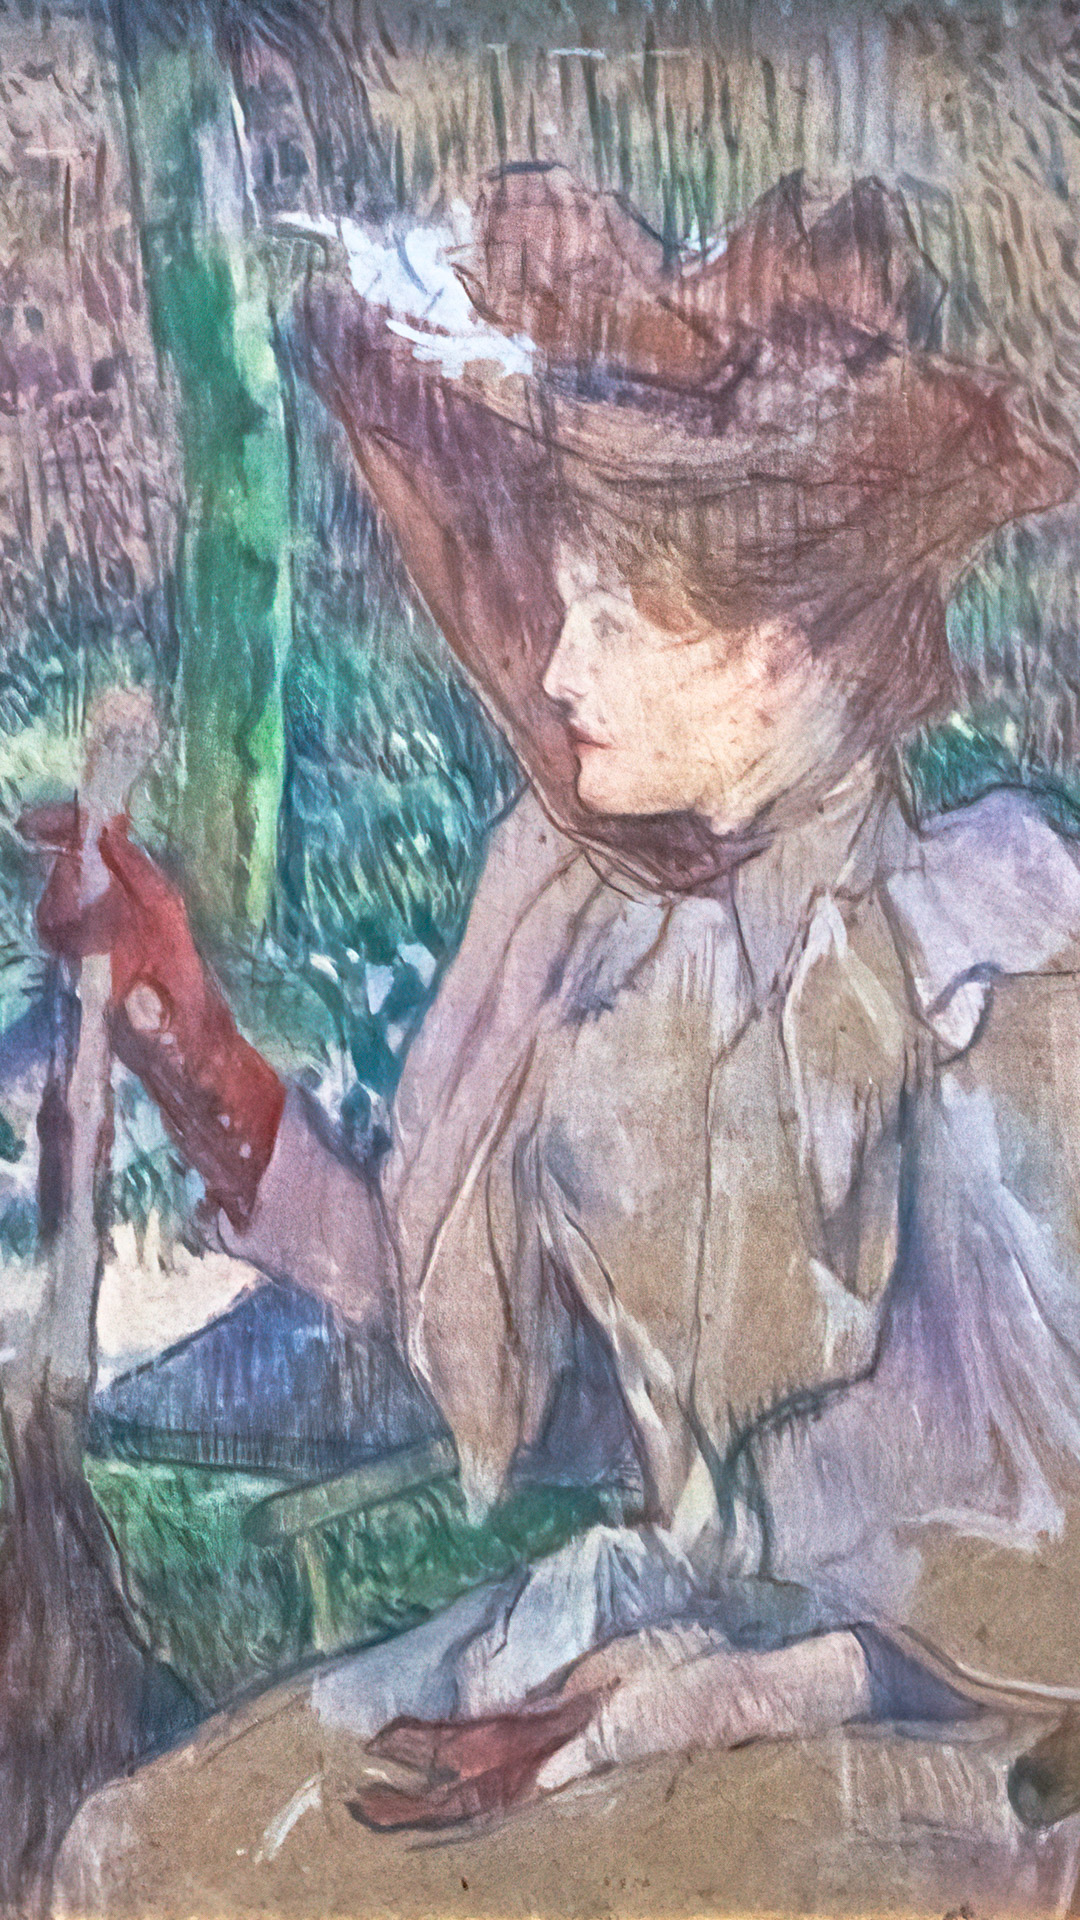 Infuse your phone with the vibrant allure of Henri de Toulouse-Lautrec's unique artistic vision.